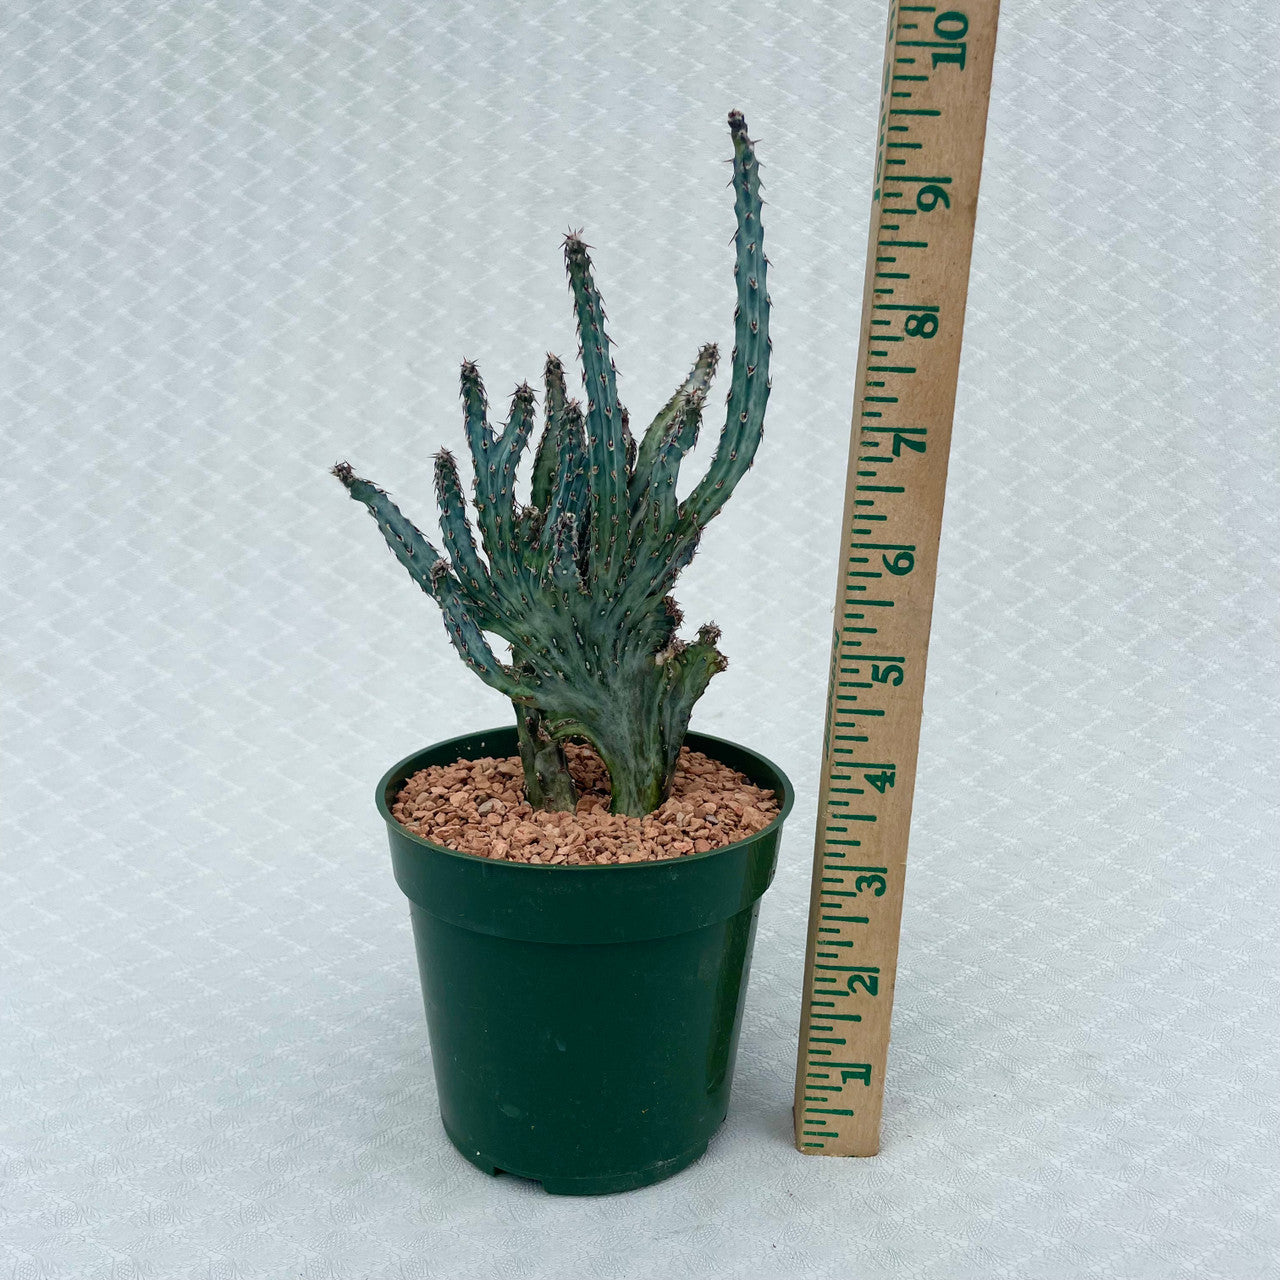 a monvillea spegazzinii cristata next to a measuring stick